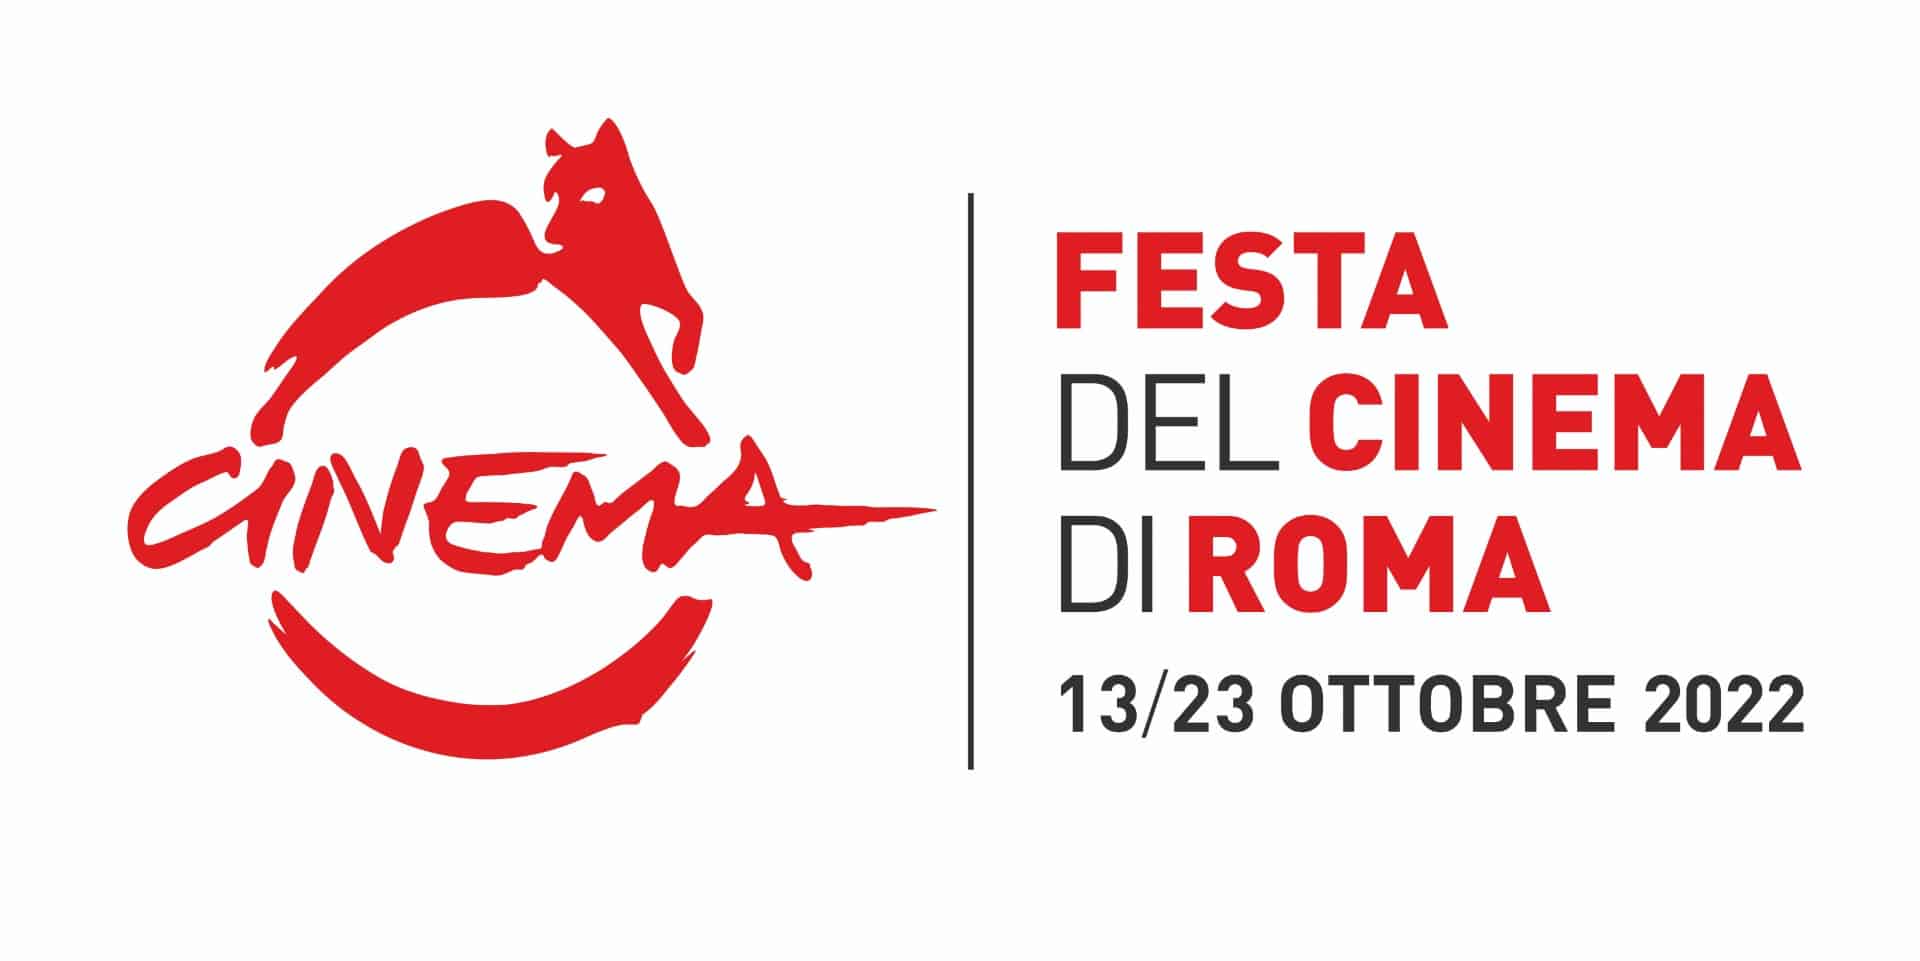 Festa del cinema di roma 2022